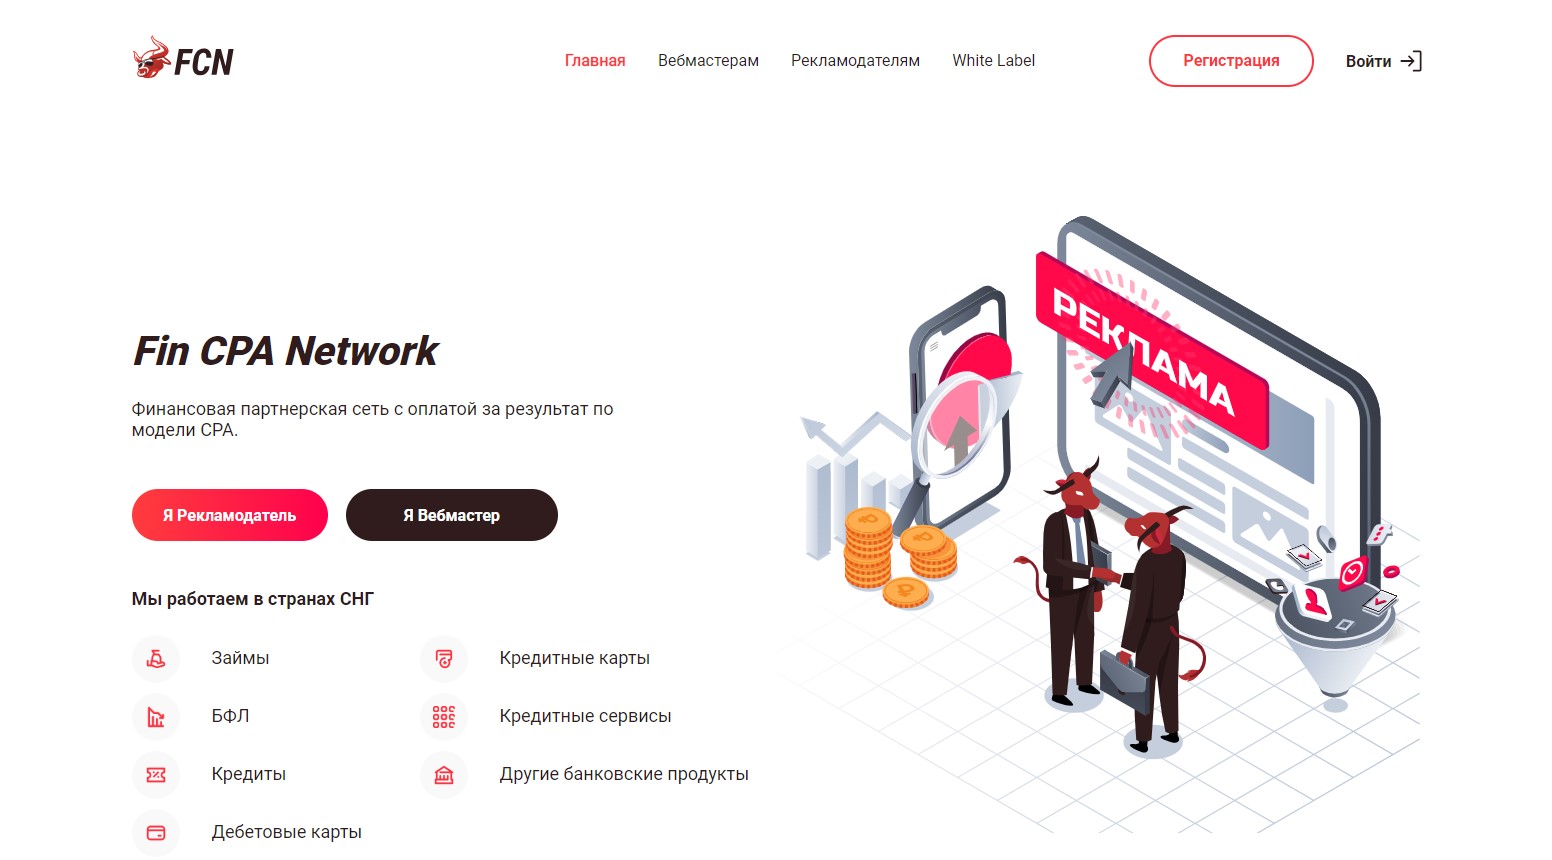 Fincpanetwork (FCN) — отзывы и обзор партнерской сети